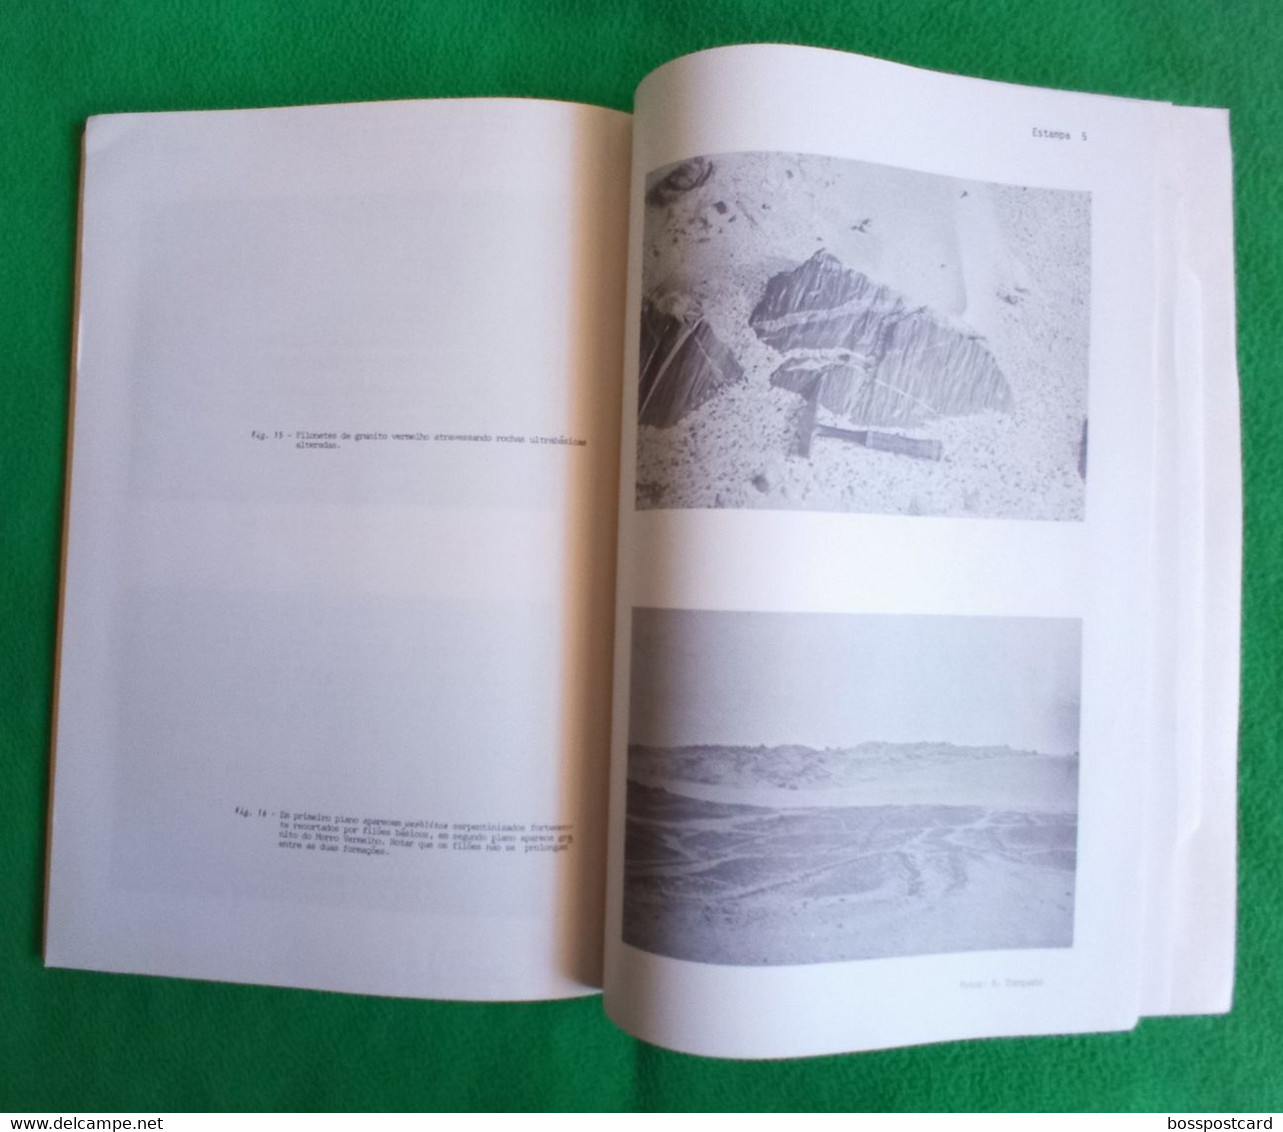 Angola - Nota Prévia sobre a Geologia da Região do Morro Vermelho (Baía dos Tigres), 1970 - Minas - Mines - Portugal